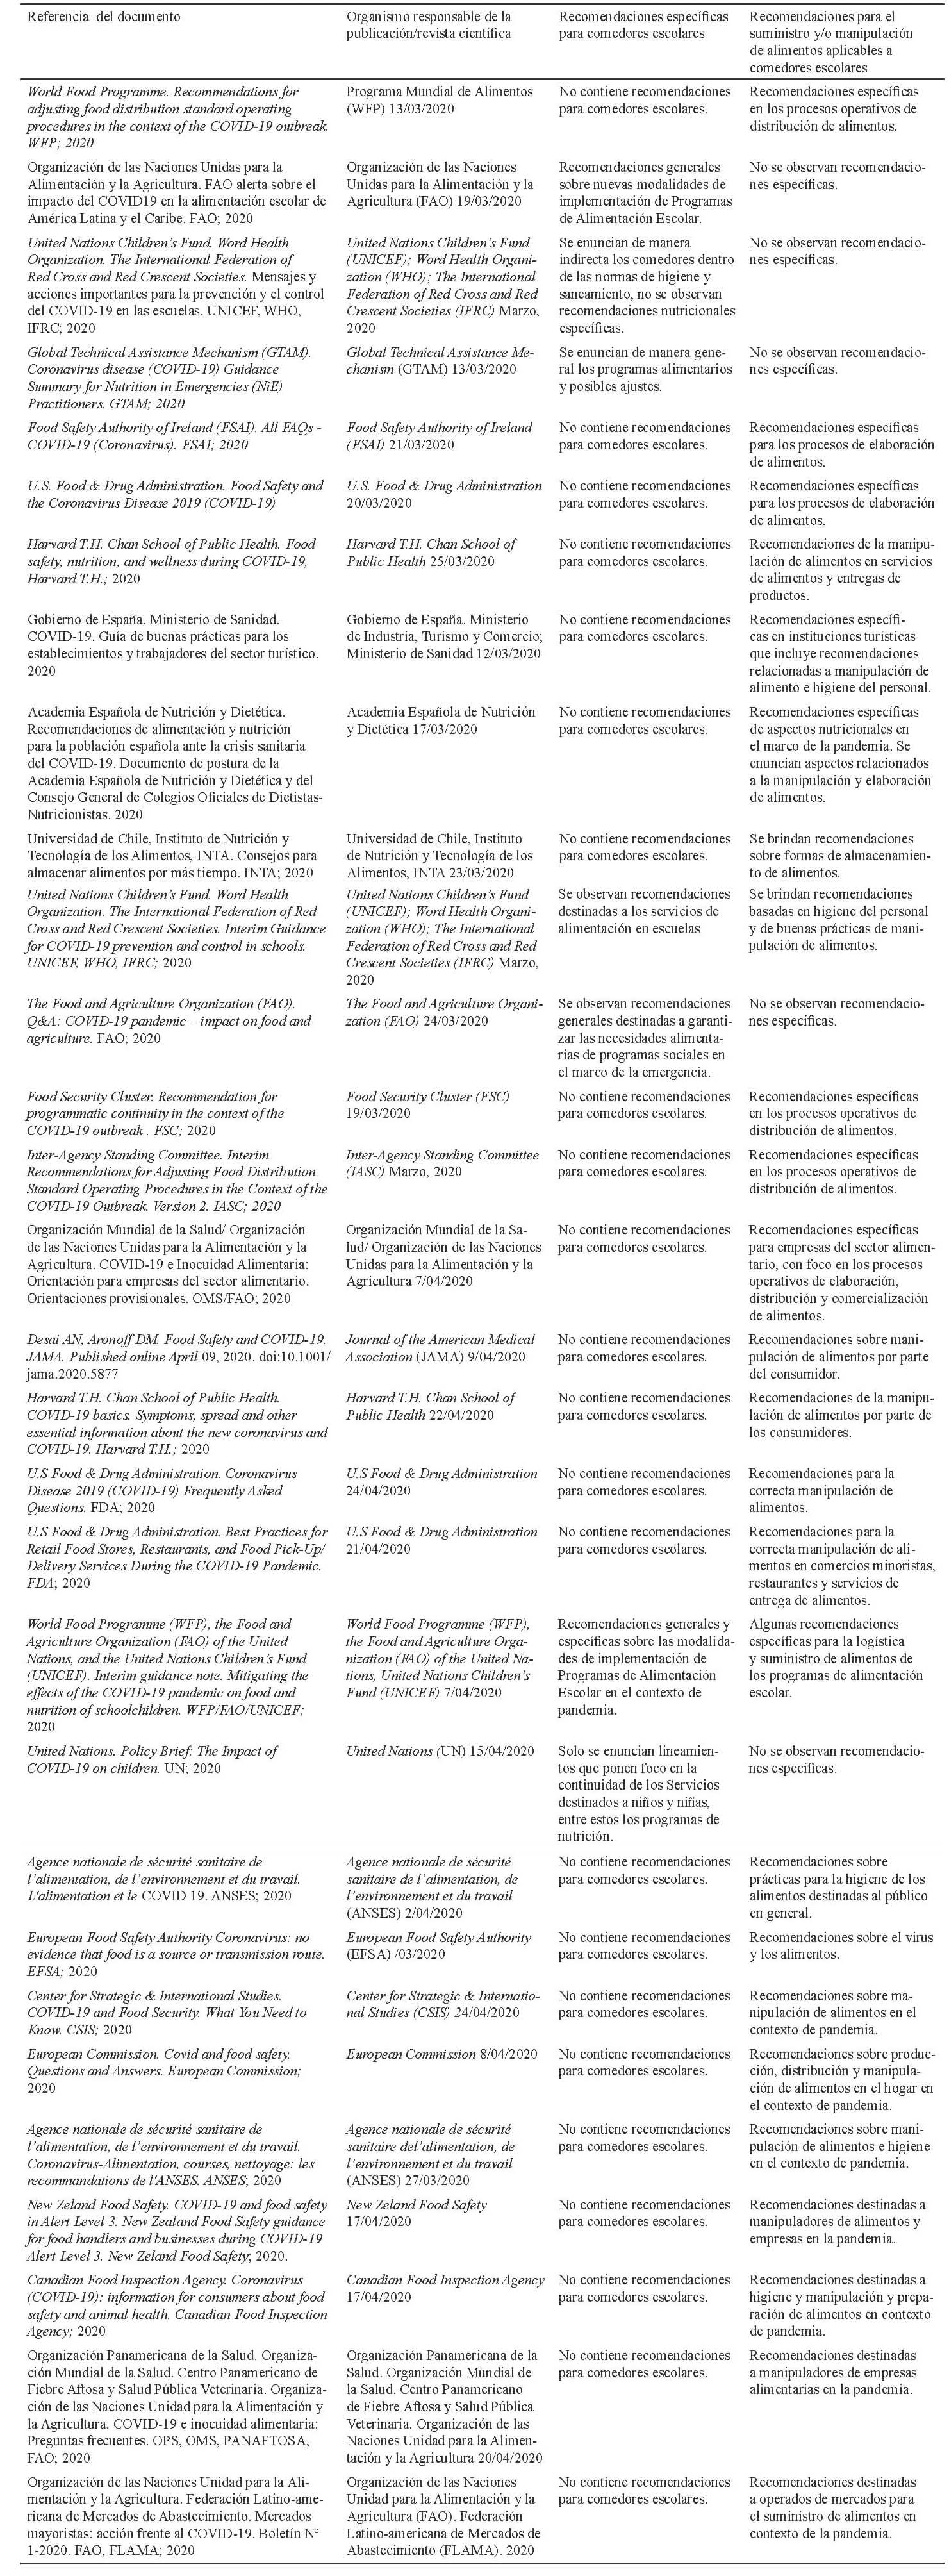 Tabla 1. Documentos internacionales publicados hasta el 25 de abril del 2020, sobre recomendaciones para la implementación de comedores escolares y manipulación de alimentos en el marco de la pandemia de COVID-19